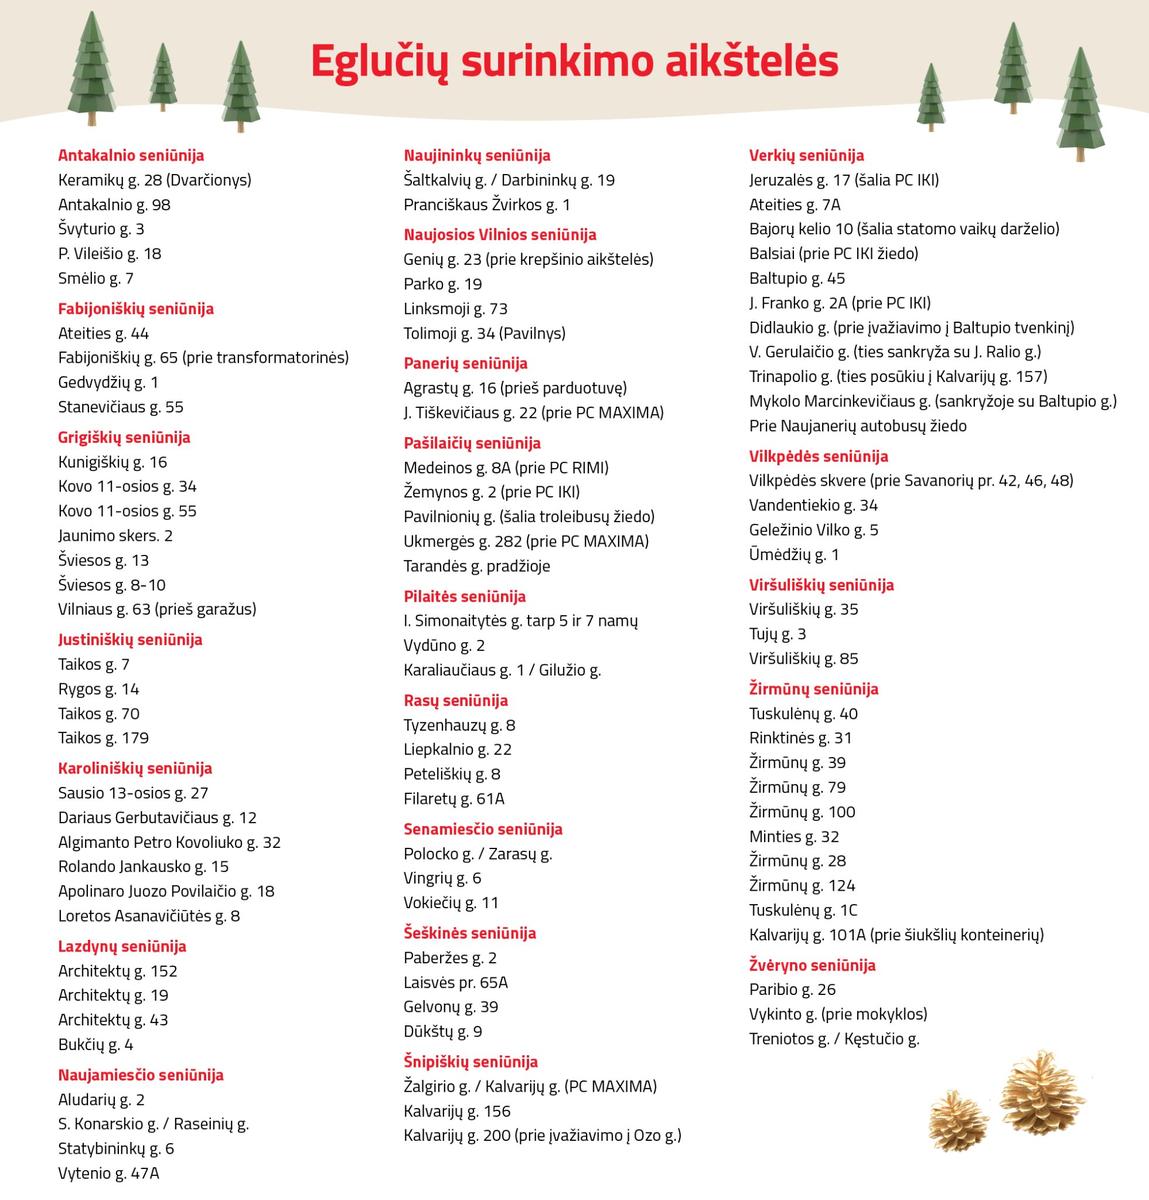 Список адресов пунктов сбора новогодних елок. Фото: самоуправление Вильнюса